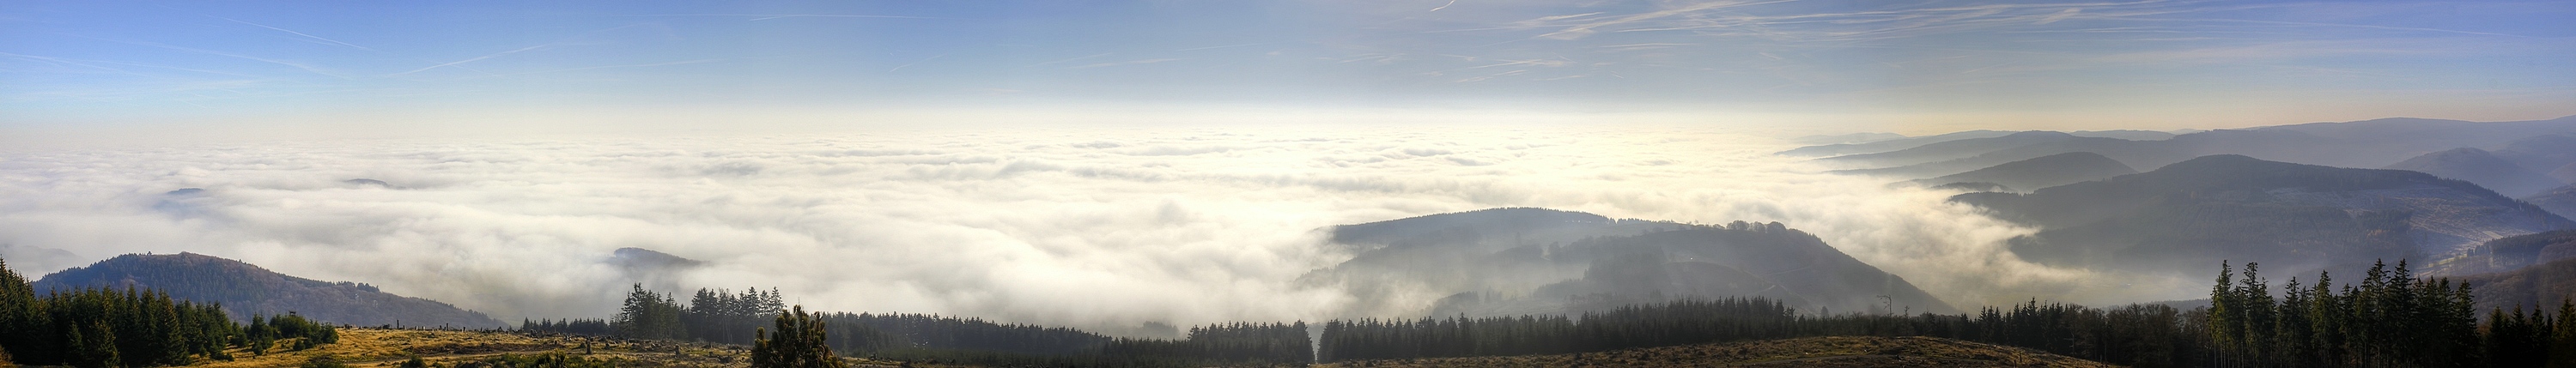 Das Nebelmeer am Rothaargebirge